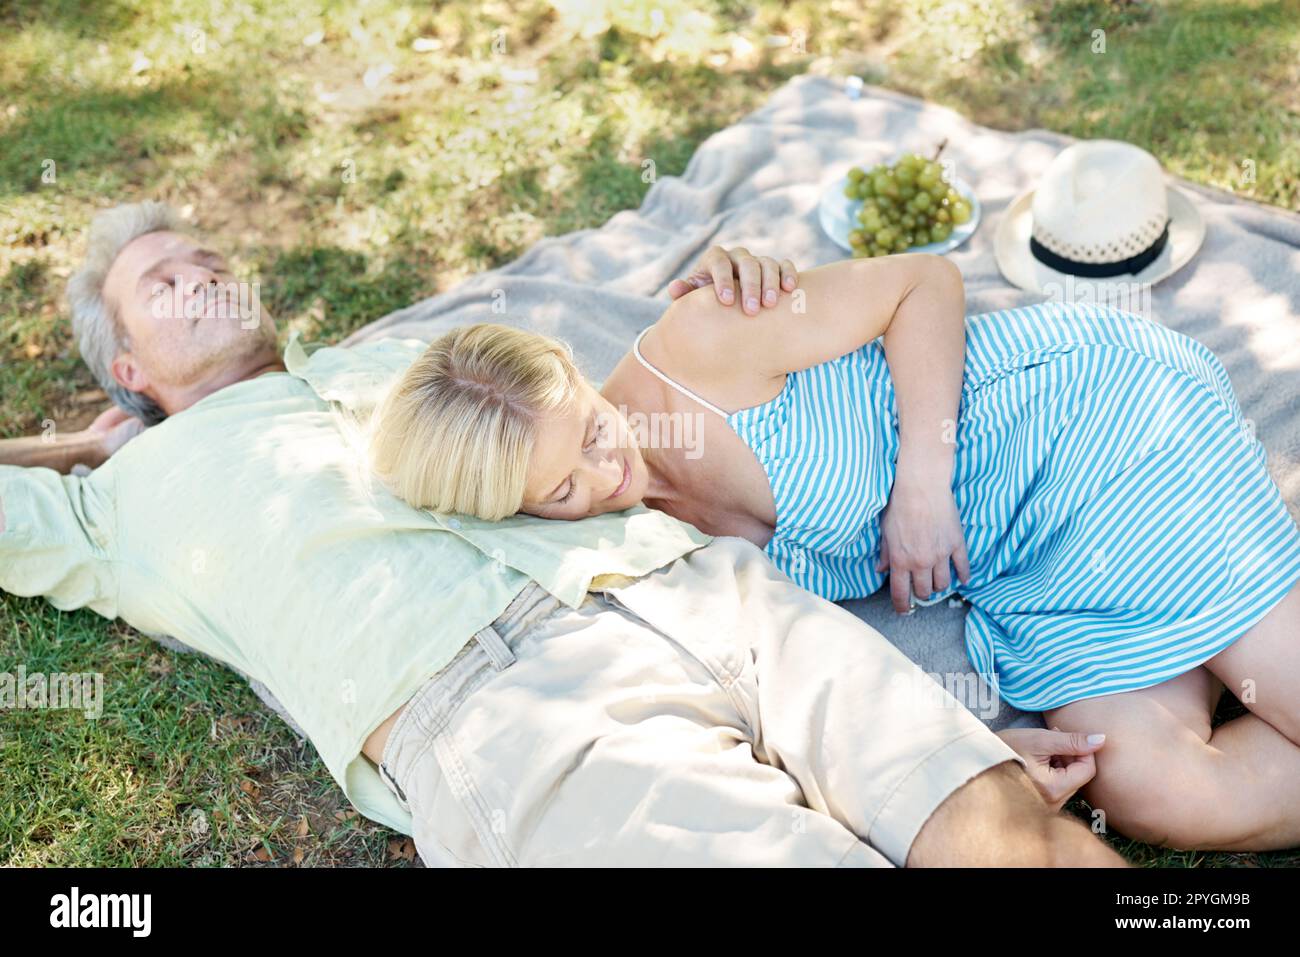 Laissez l'air frais vous faire oublier le stress... Un mari et une femme détendus allongé sur une couverture pour profiter d'un pique-nique tranquille dans le parc. Banque D'Images